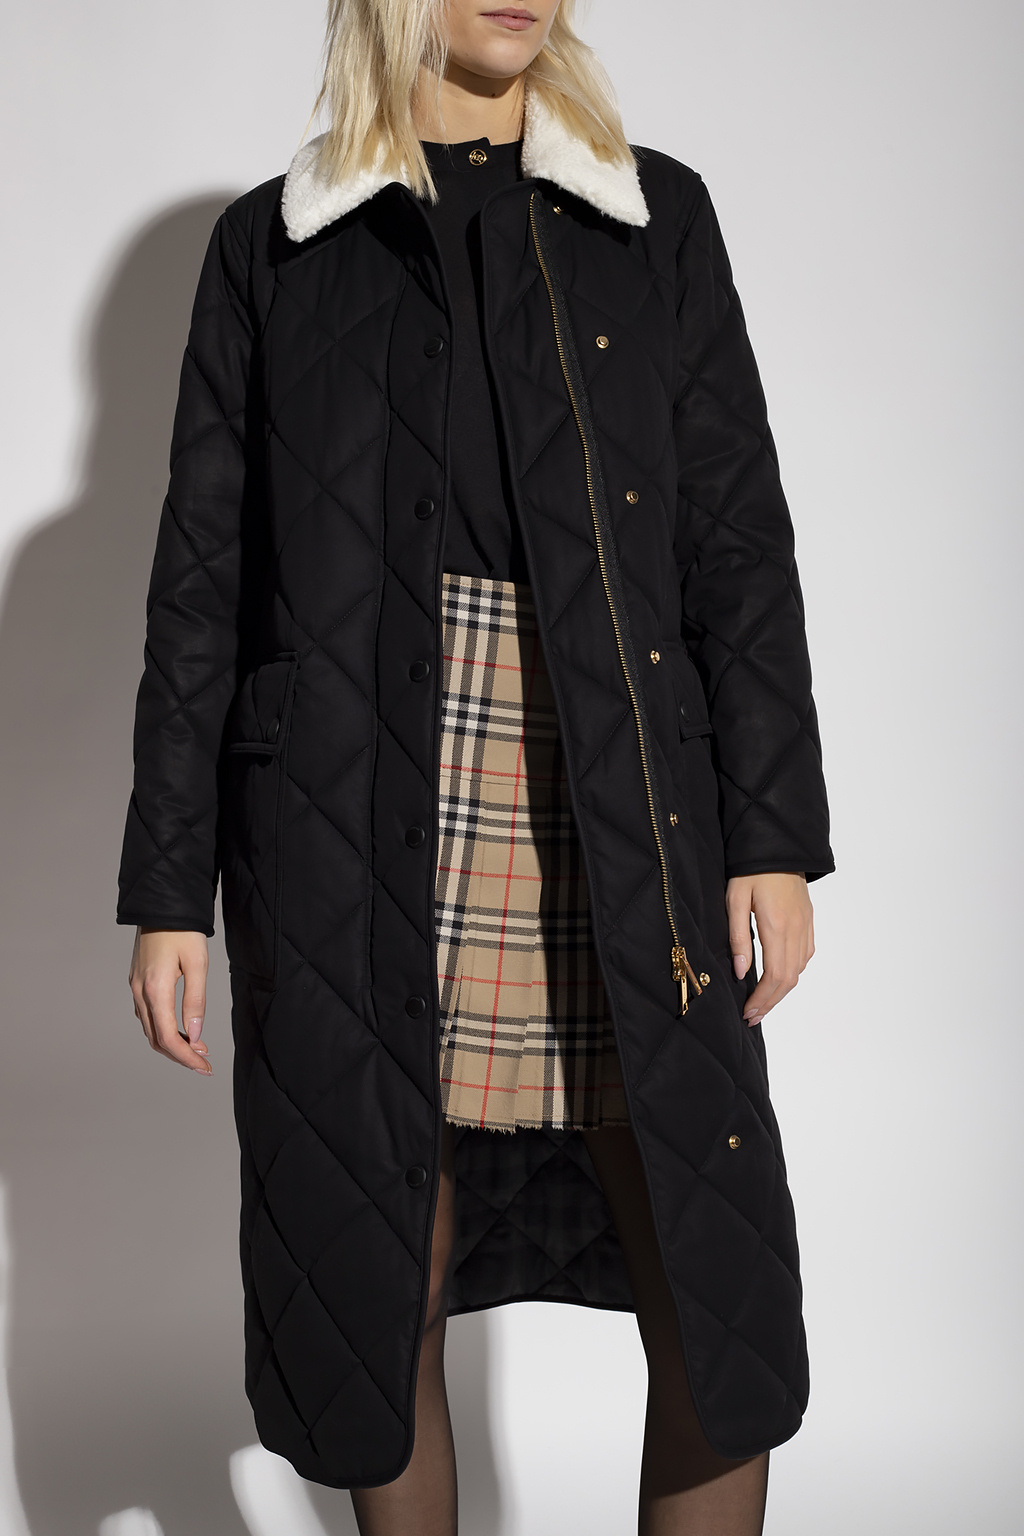 Burberry ‘Kemptown’ quilted coat